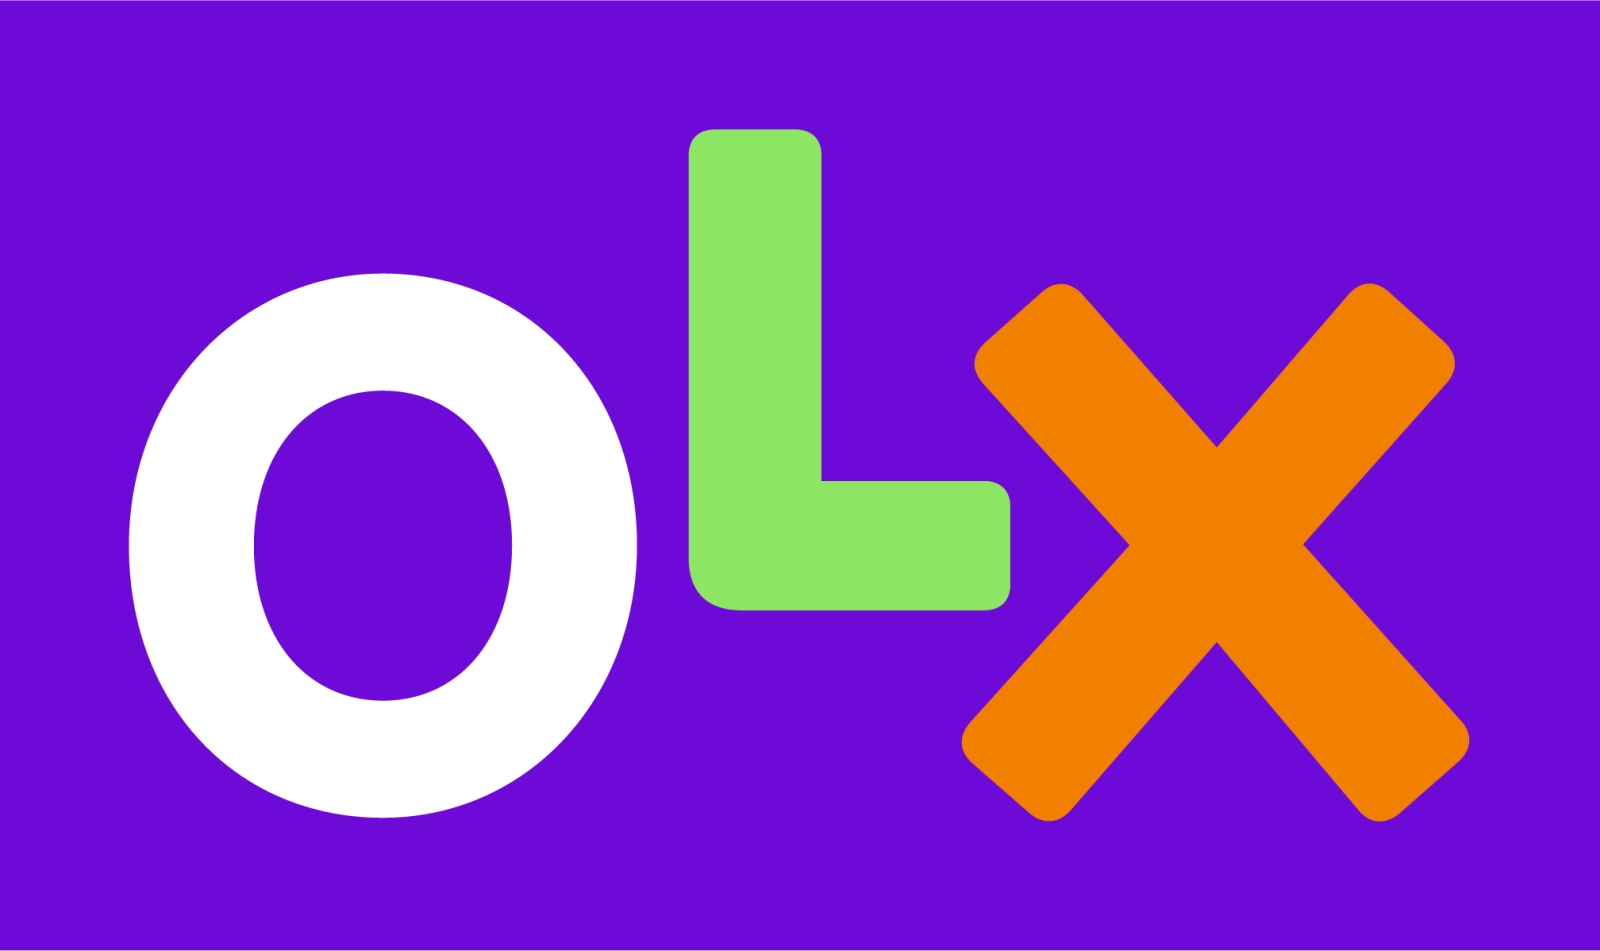 OLX anuncia envío gratuito para pedidos durante todo el mes de diciembre